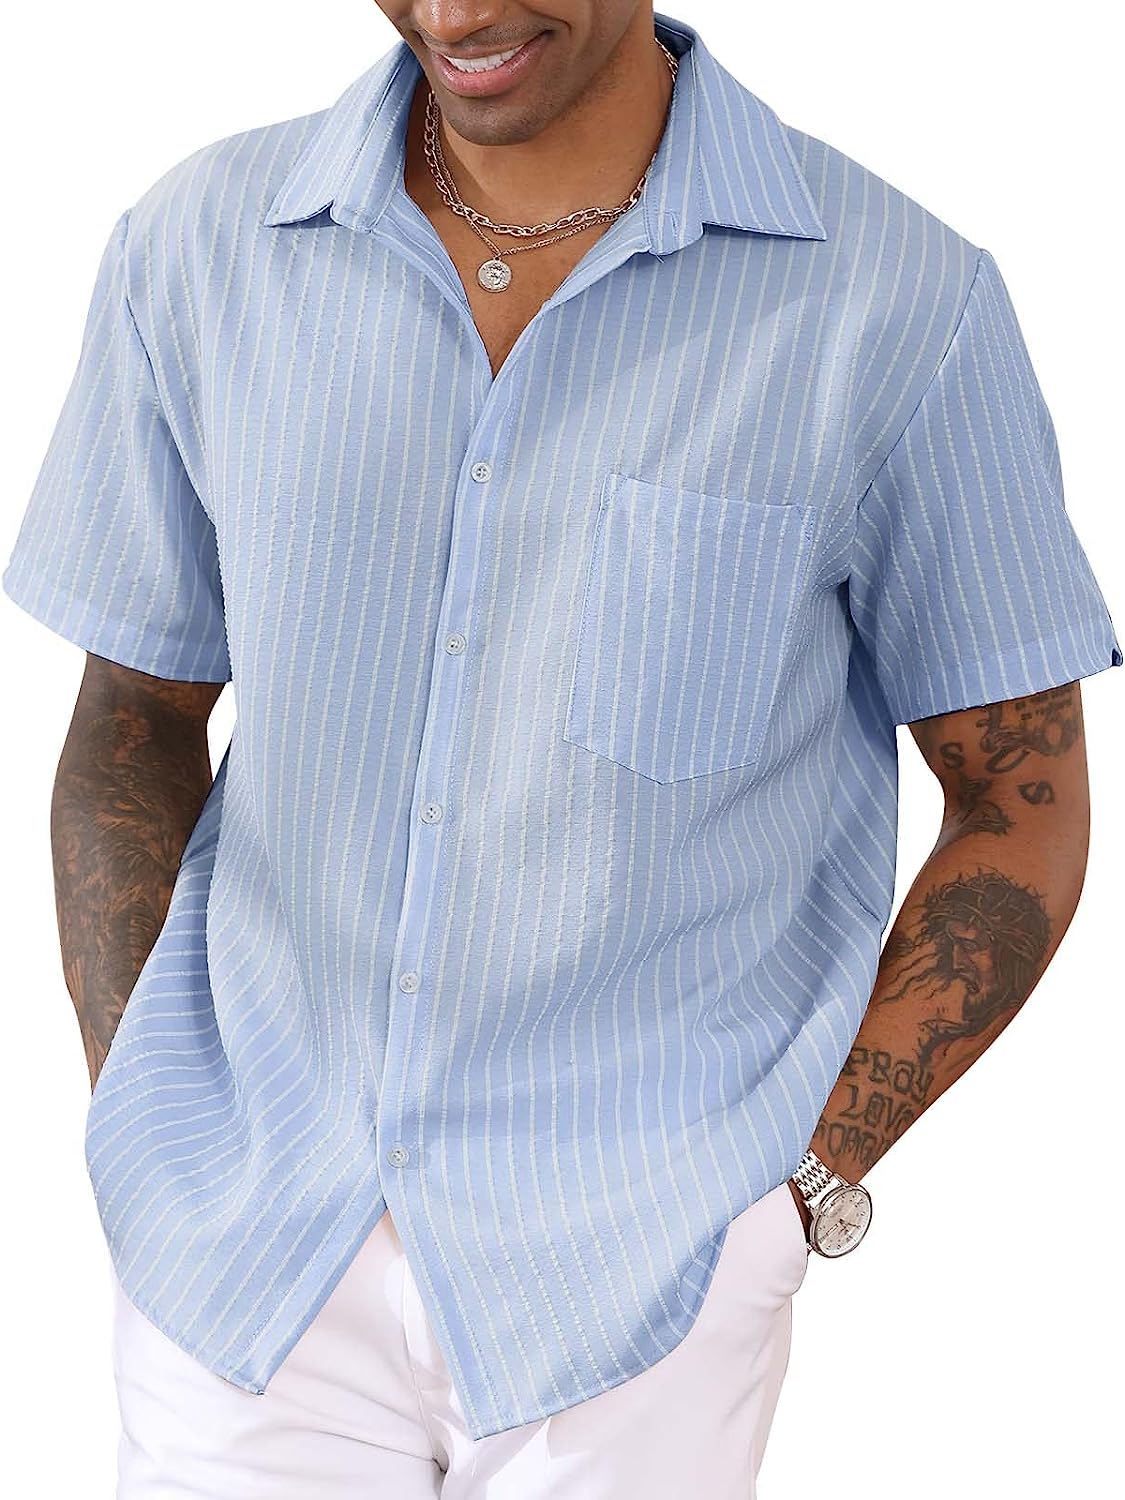 Linen Shirt Short Sleeve - Blue/White Stripe